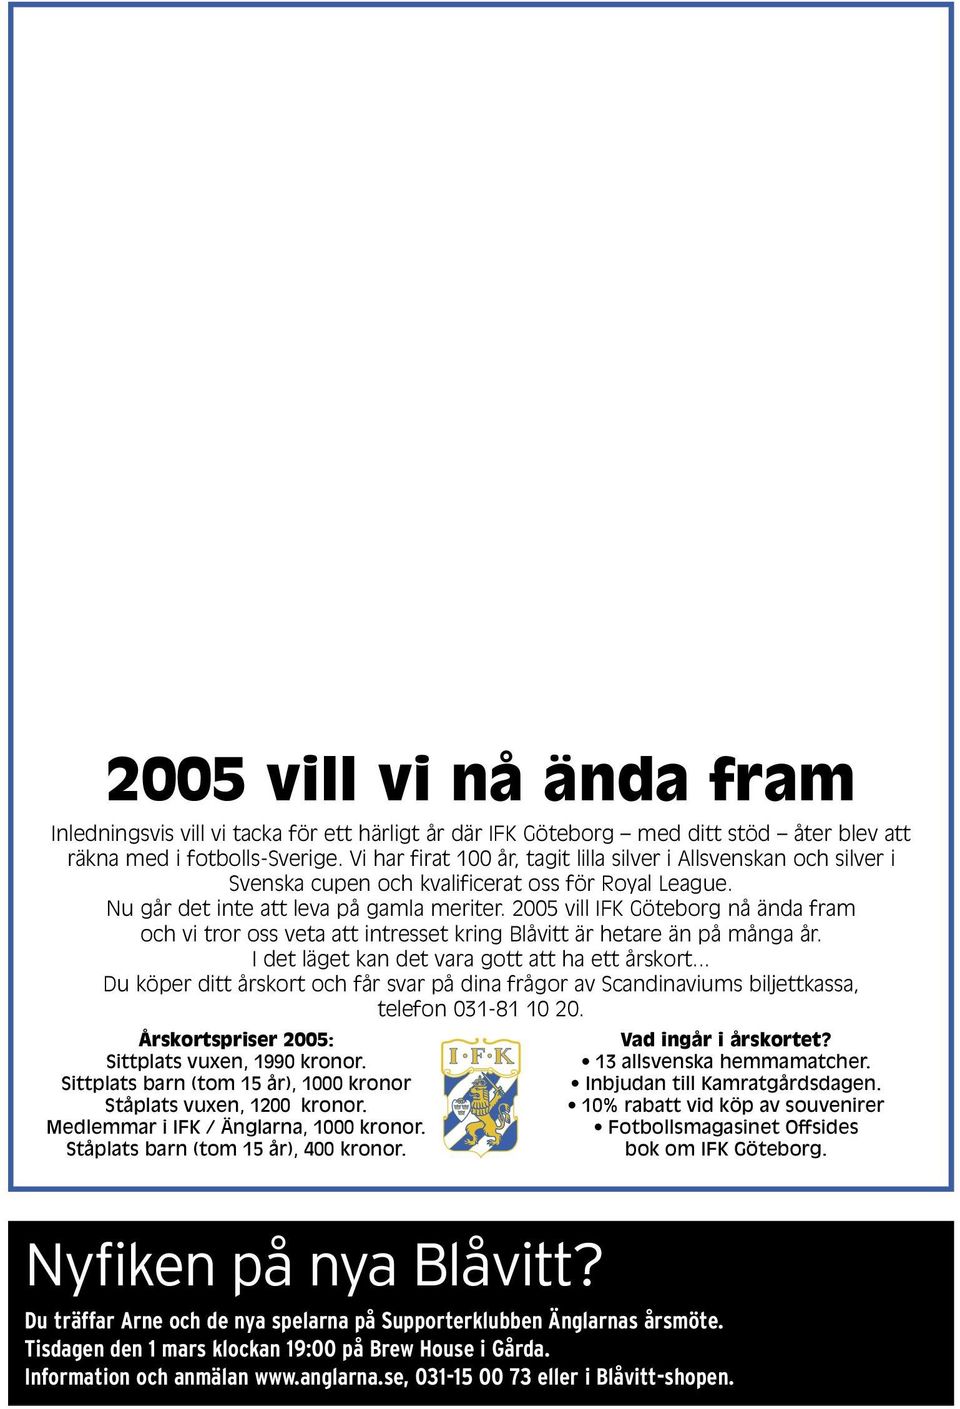 2005 vill IFK Göteborg nå ända fram och vi tror oss veta att intresset kring Blåvitt är hetare än på många år. I det läget kan det vara gott att ha ett årskort.